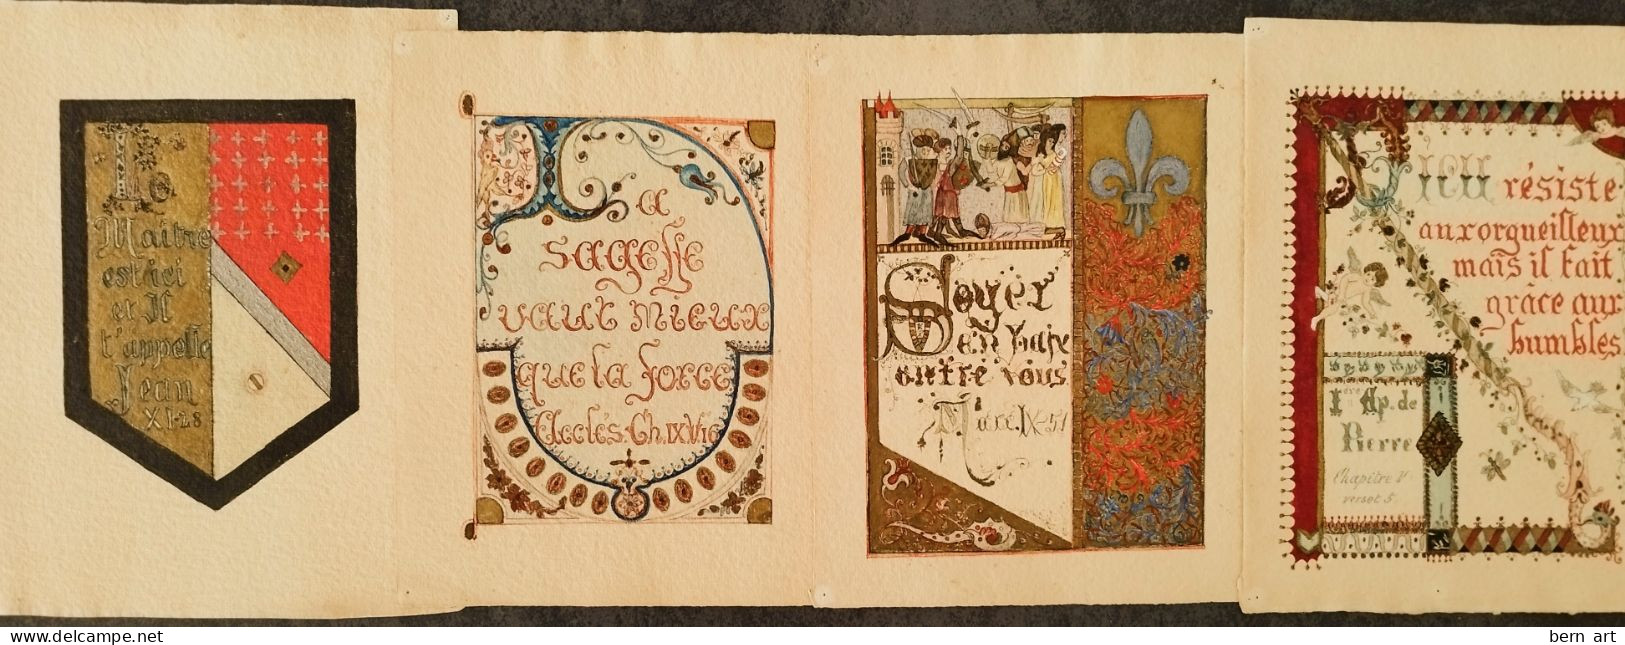 4 Enluminures Fin XIXè Sur Papier J. WHATMAN. Fond D'Atelier Artiste B.F. (Berthe Flournoy) Vers 1900 (Genève) - Acquarelli